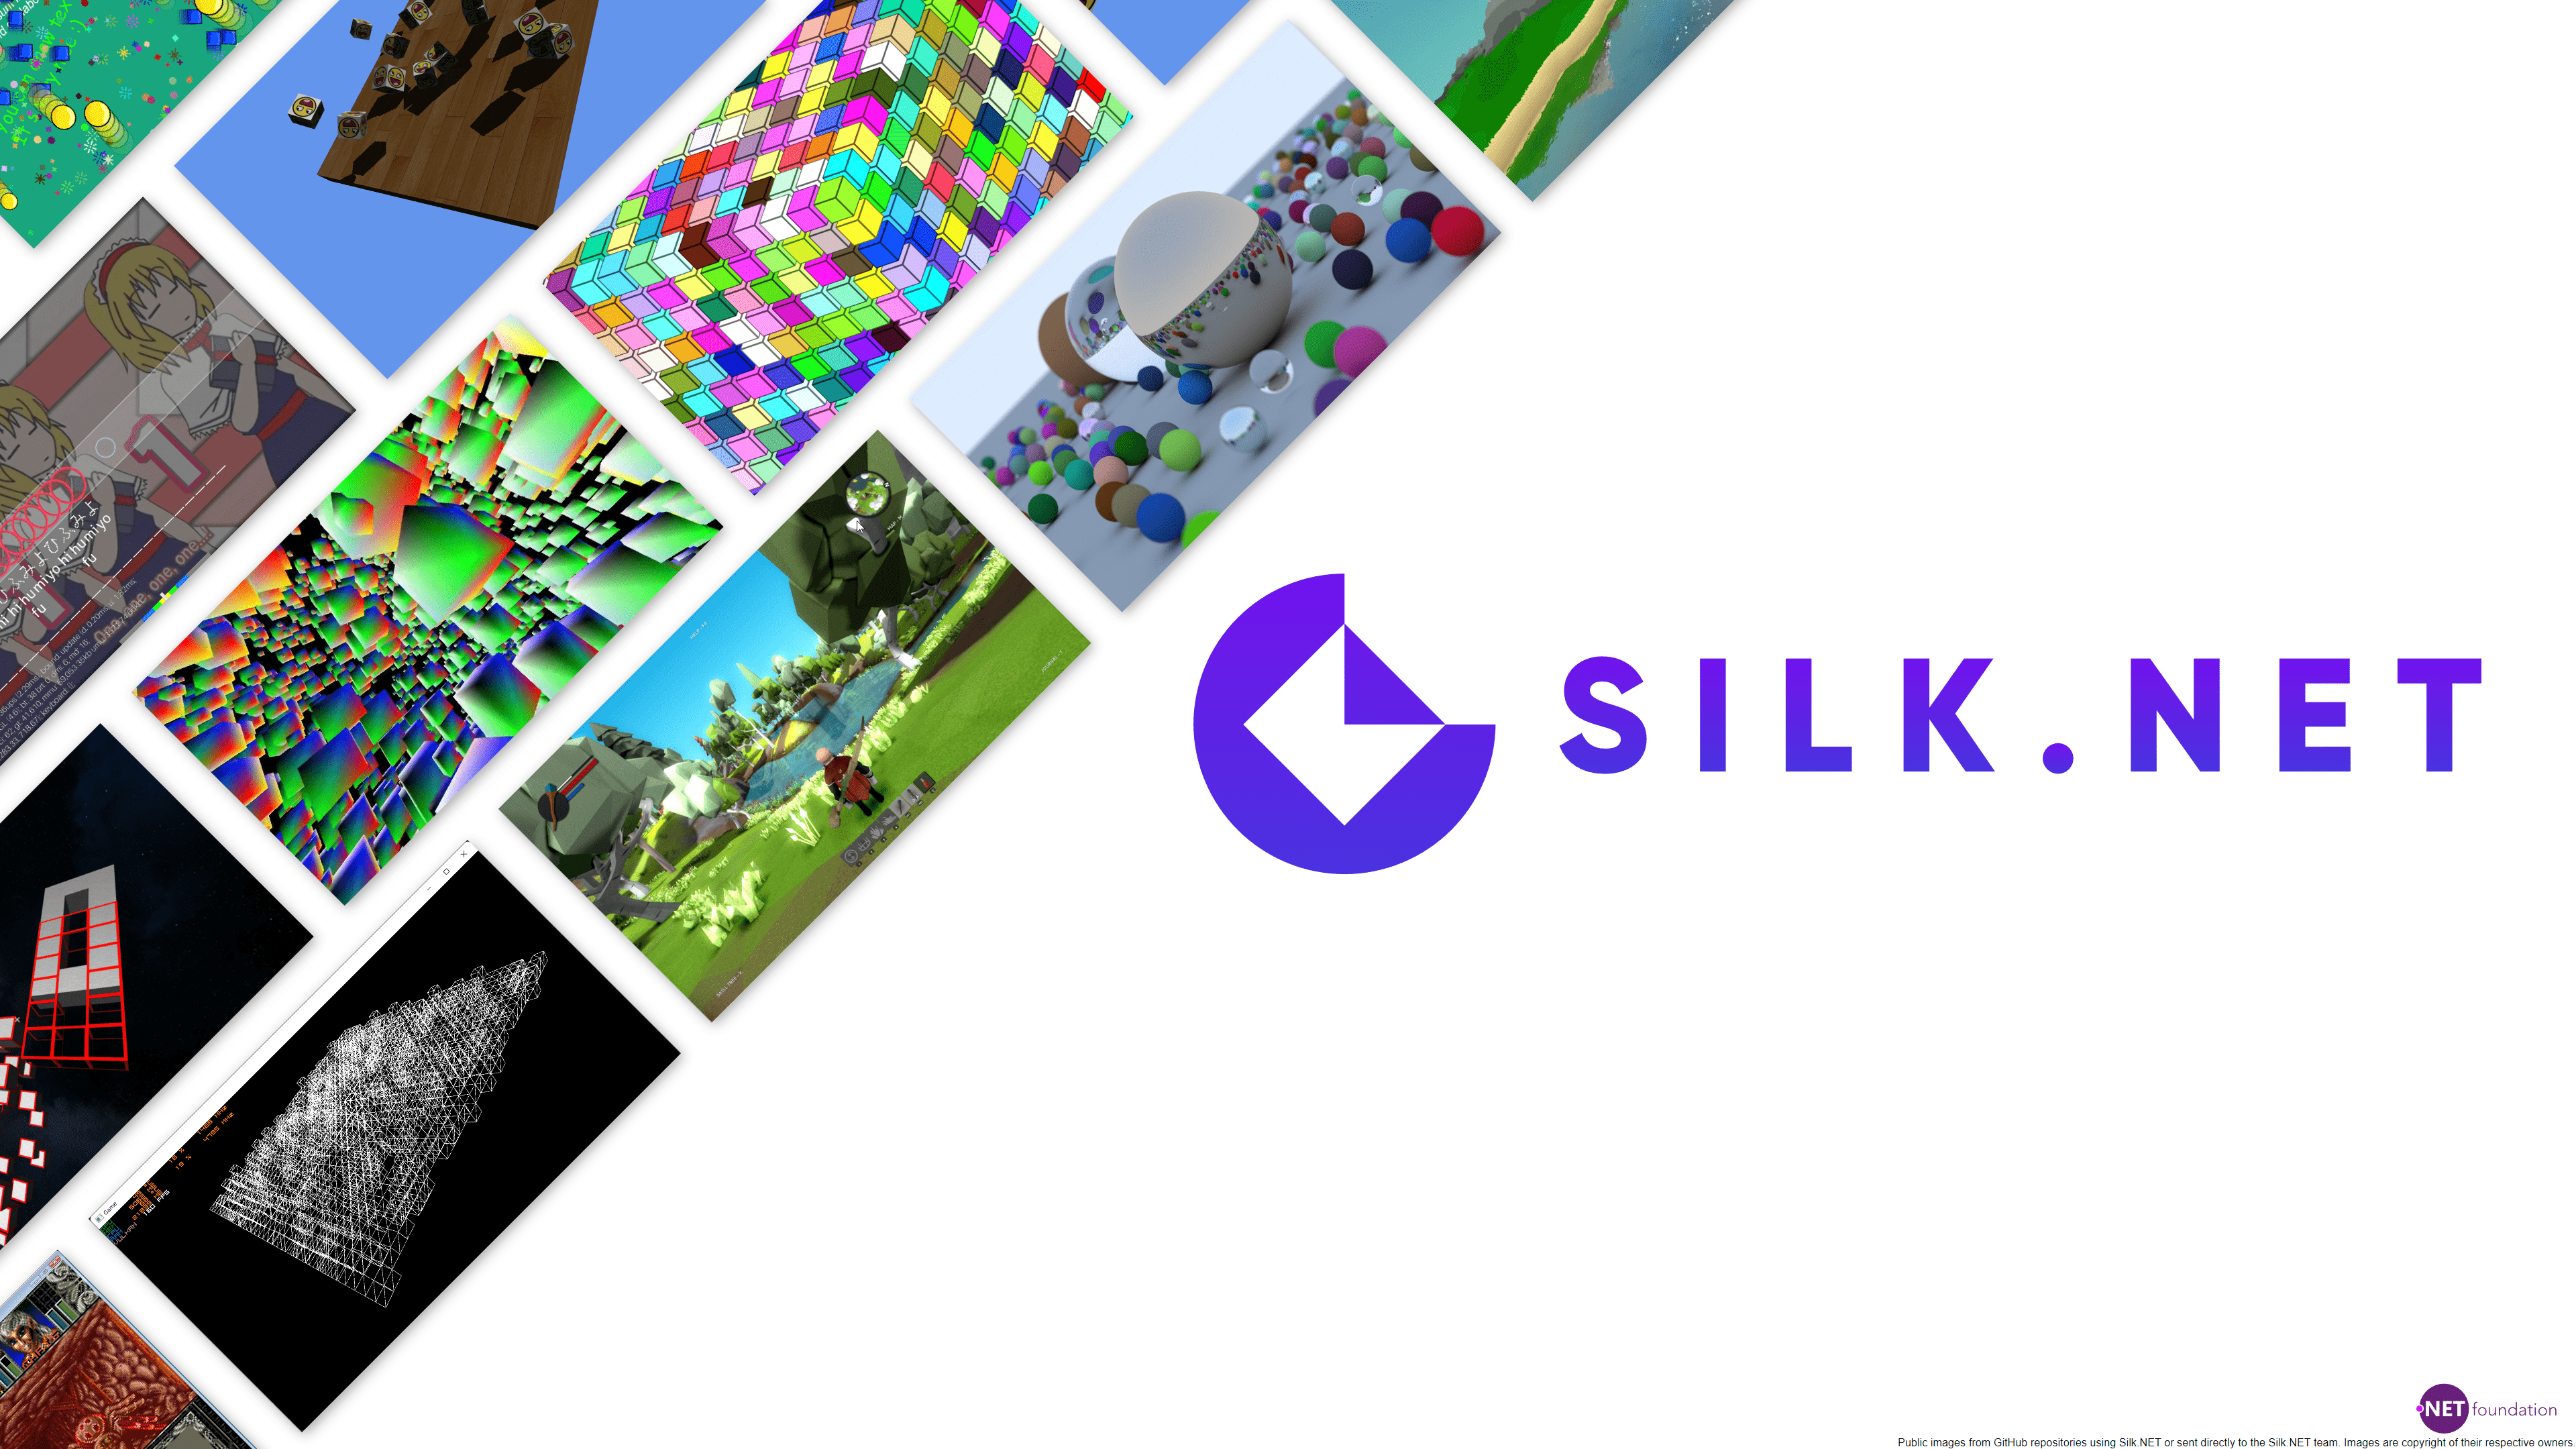 Silk.NET